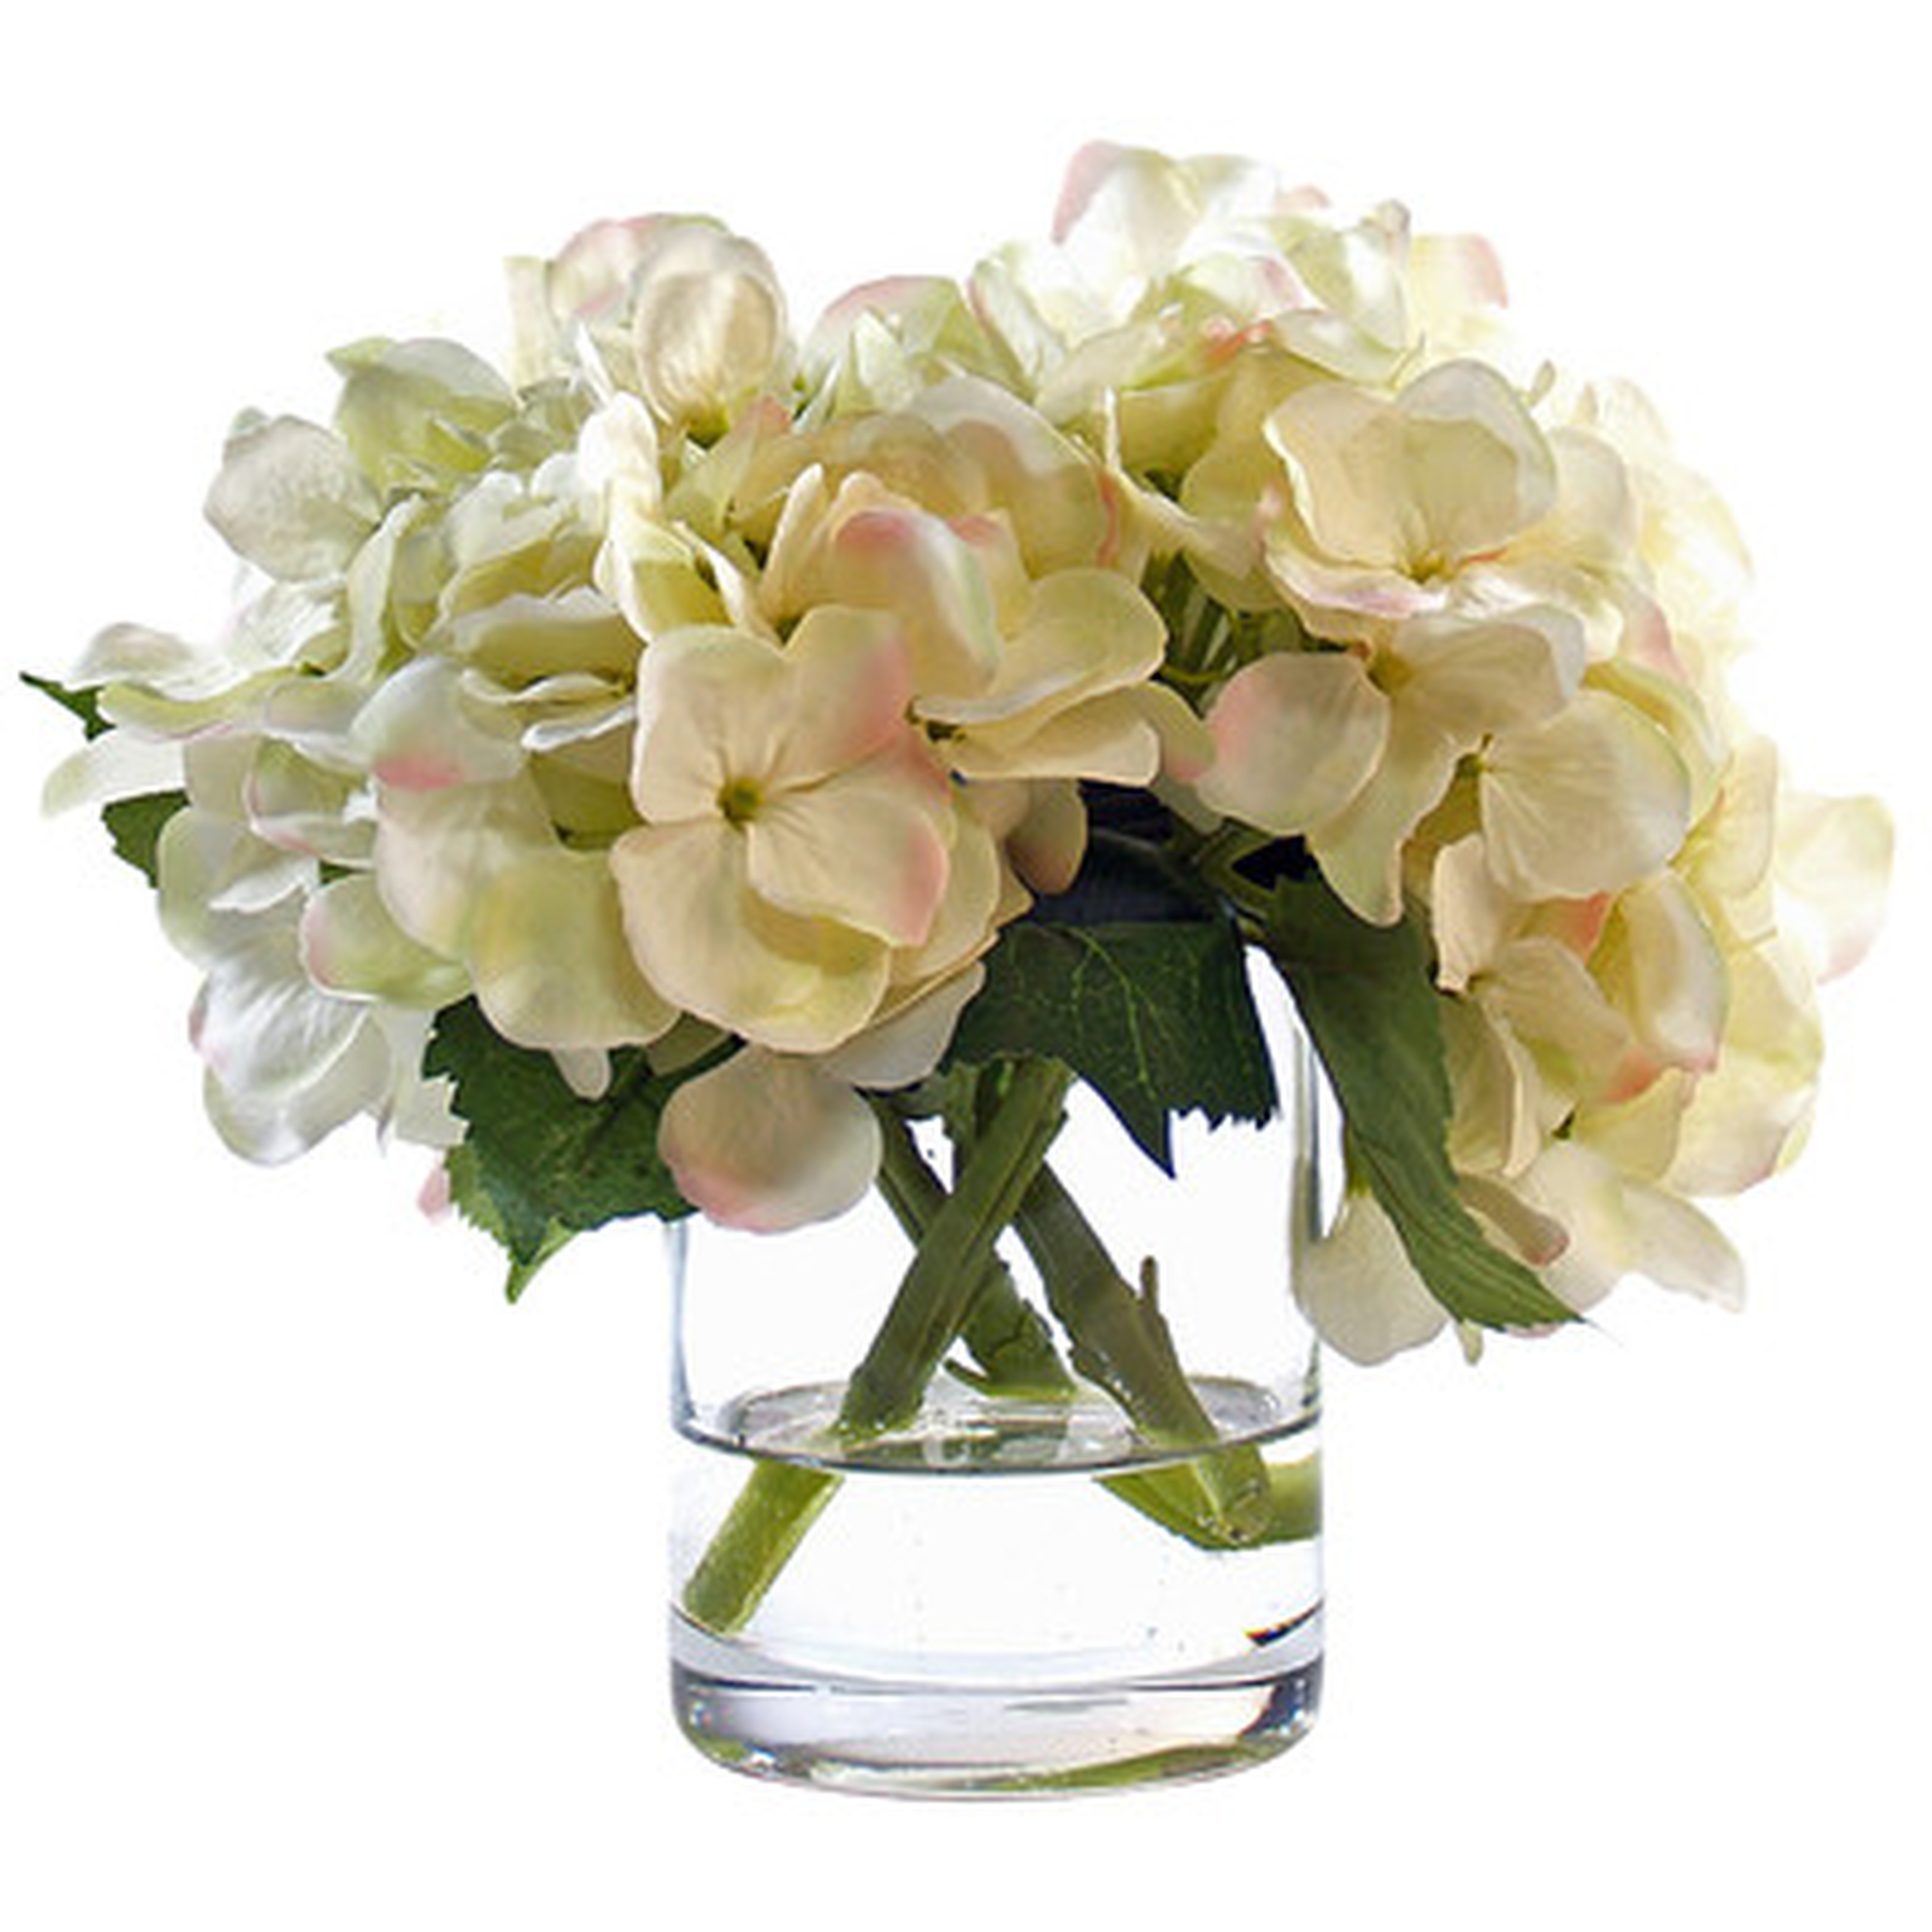 White Hydrangea Floral Arrangement in Glass Vase - Birch Lane